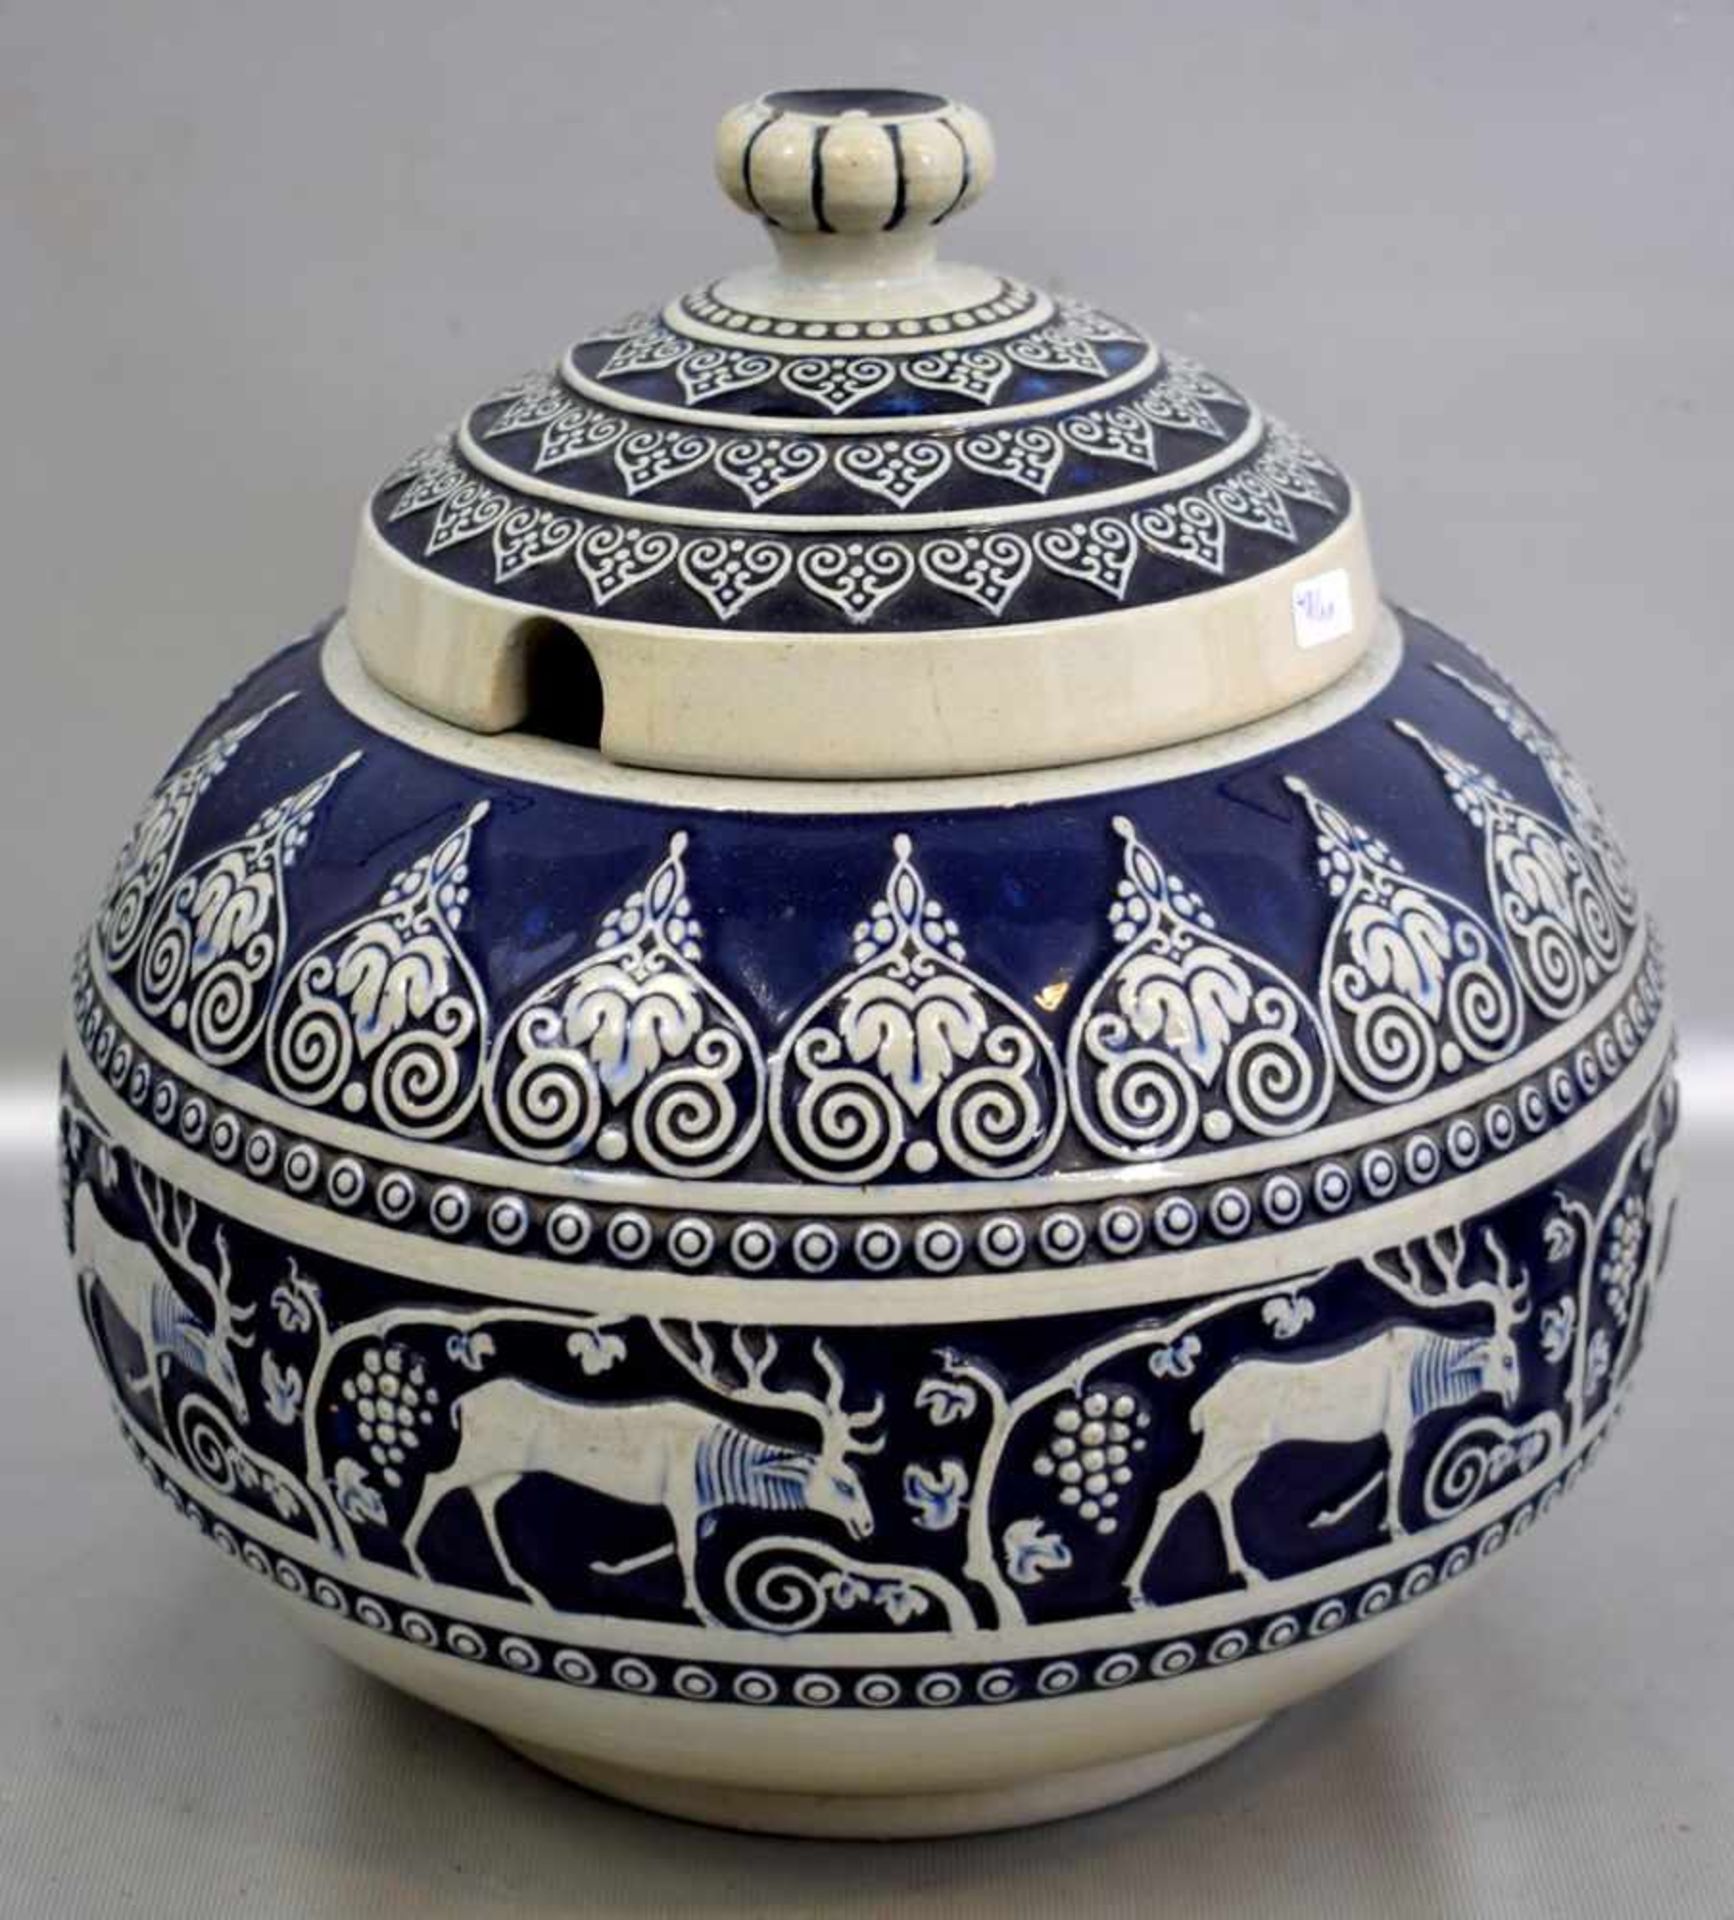 Bowletopfbeigefarbener Ton, Wandung mit Hirschen und Ornamenten verziert, blau bemalt, Entwurf